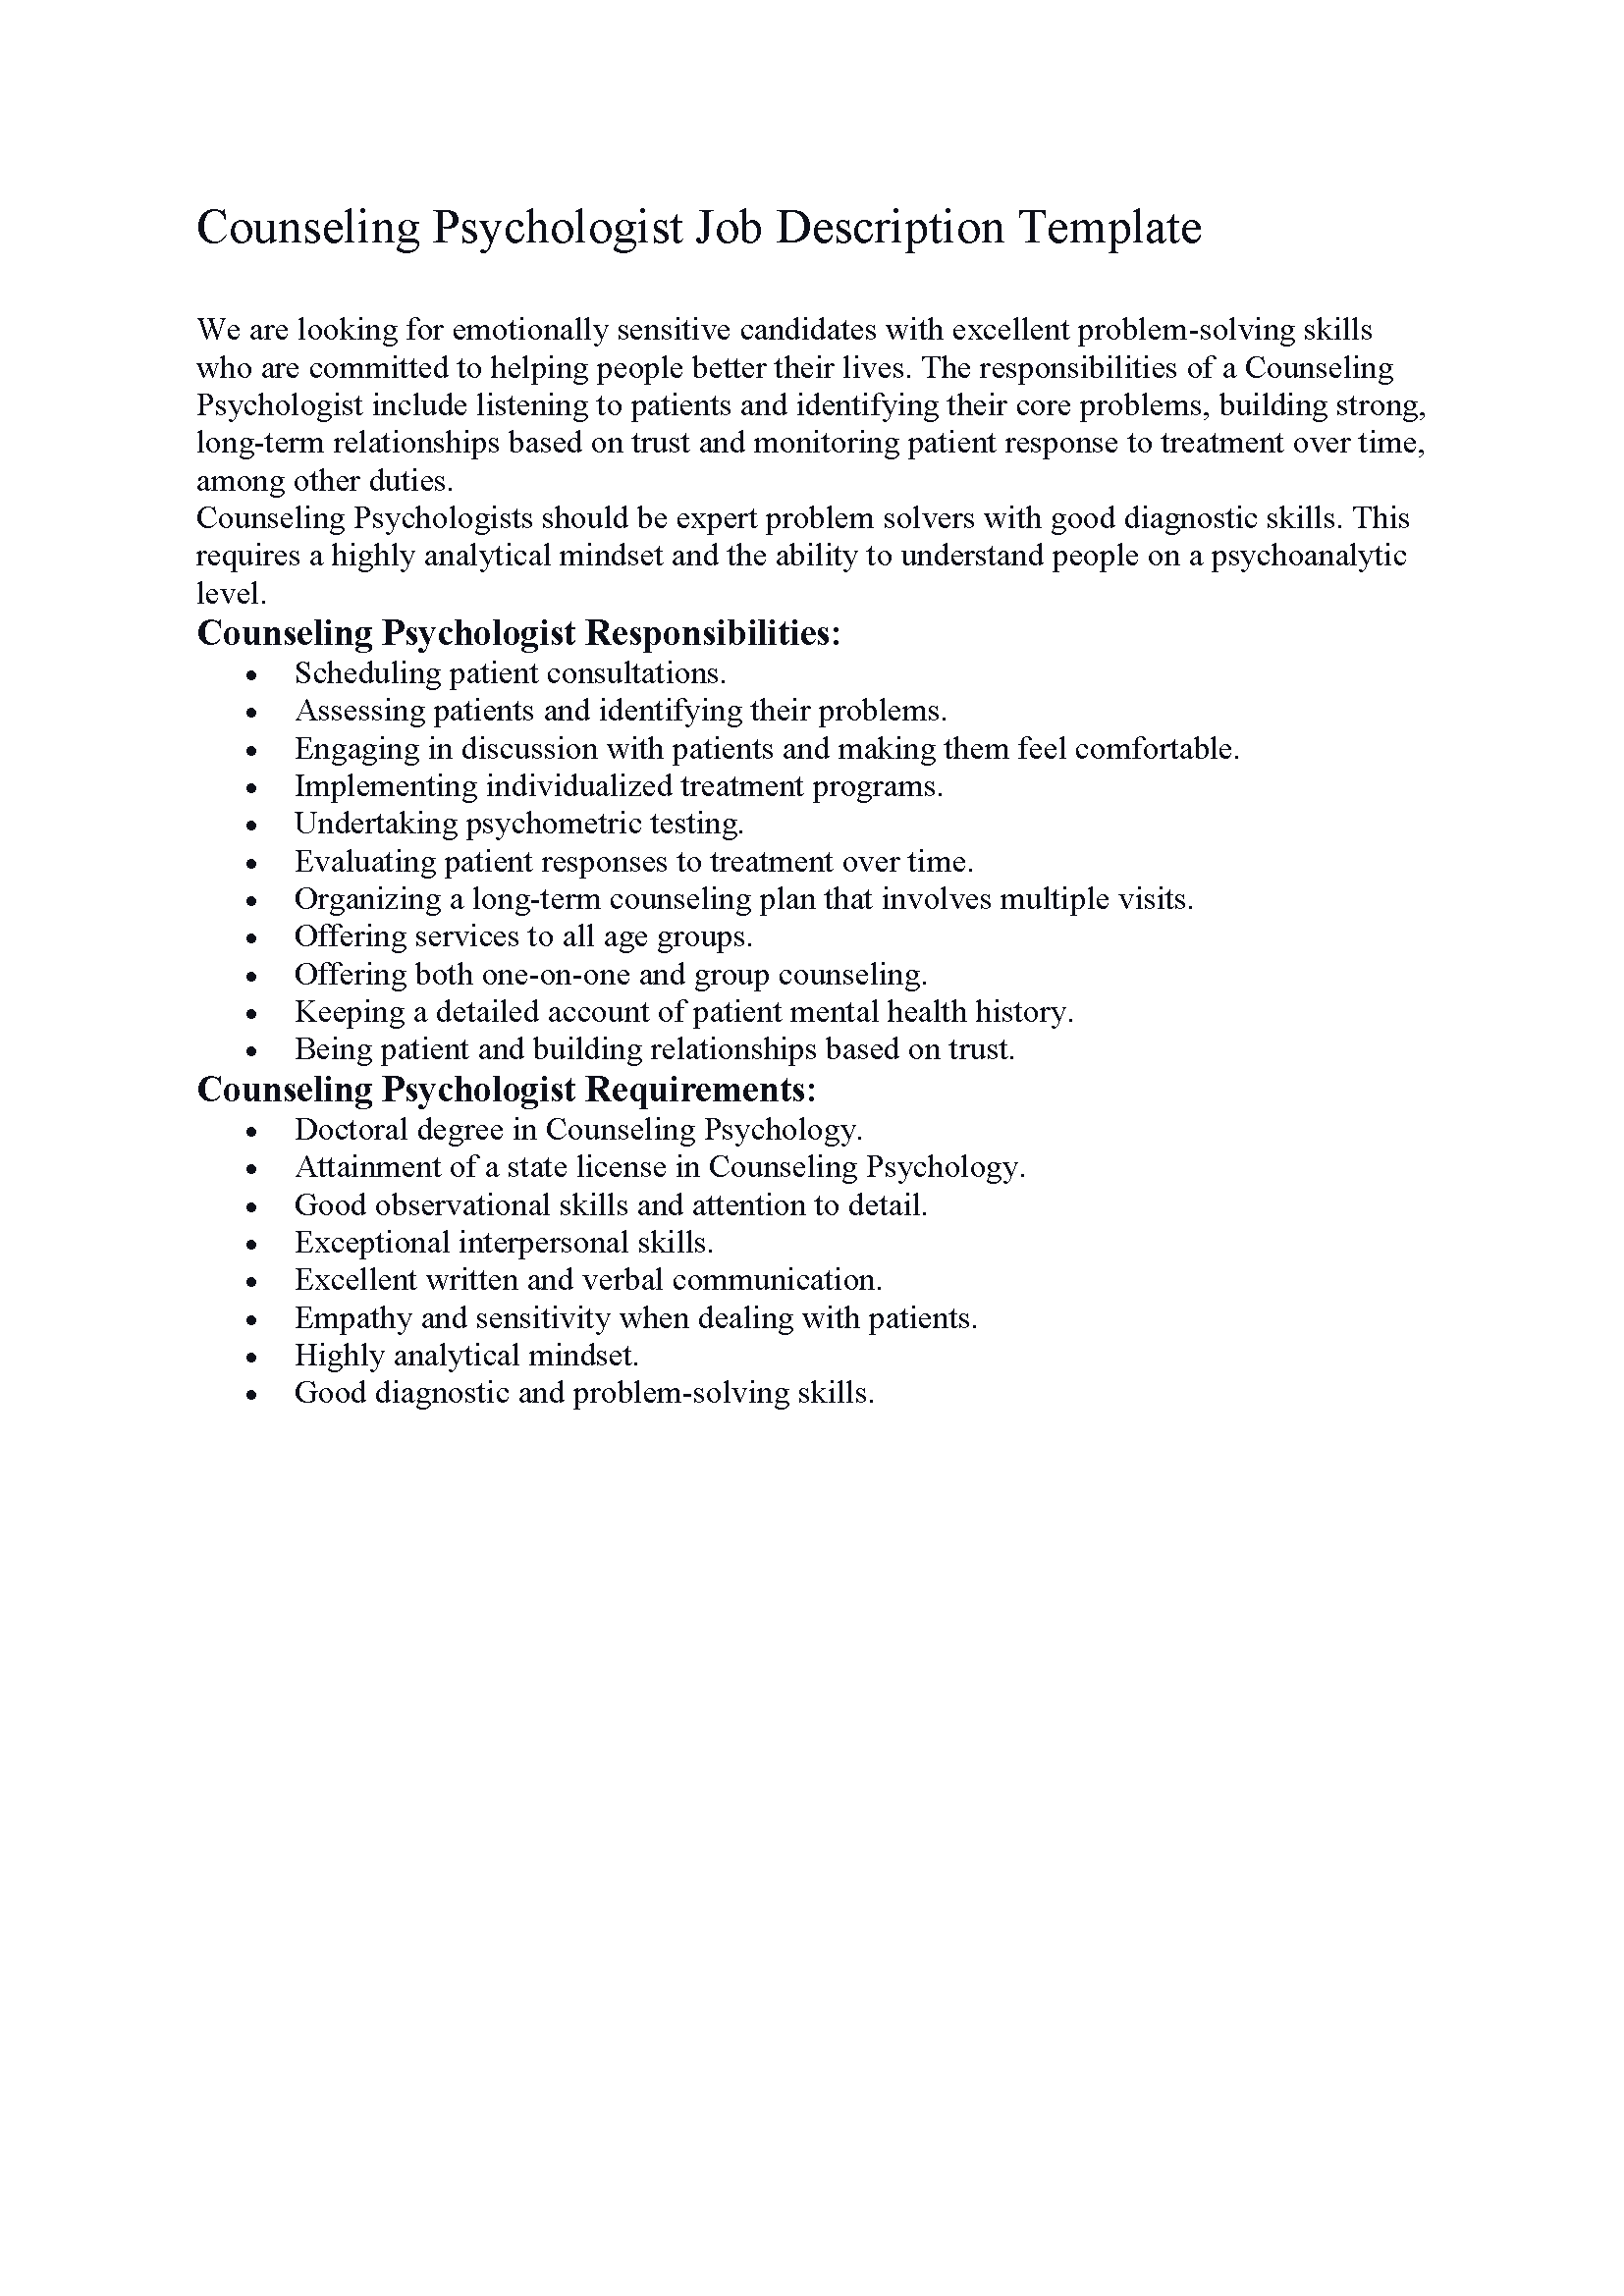 Counseling Psychologist Job Description Template